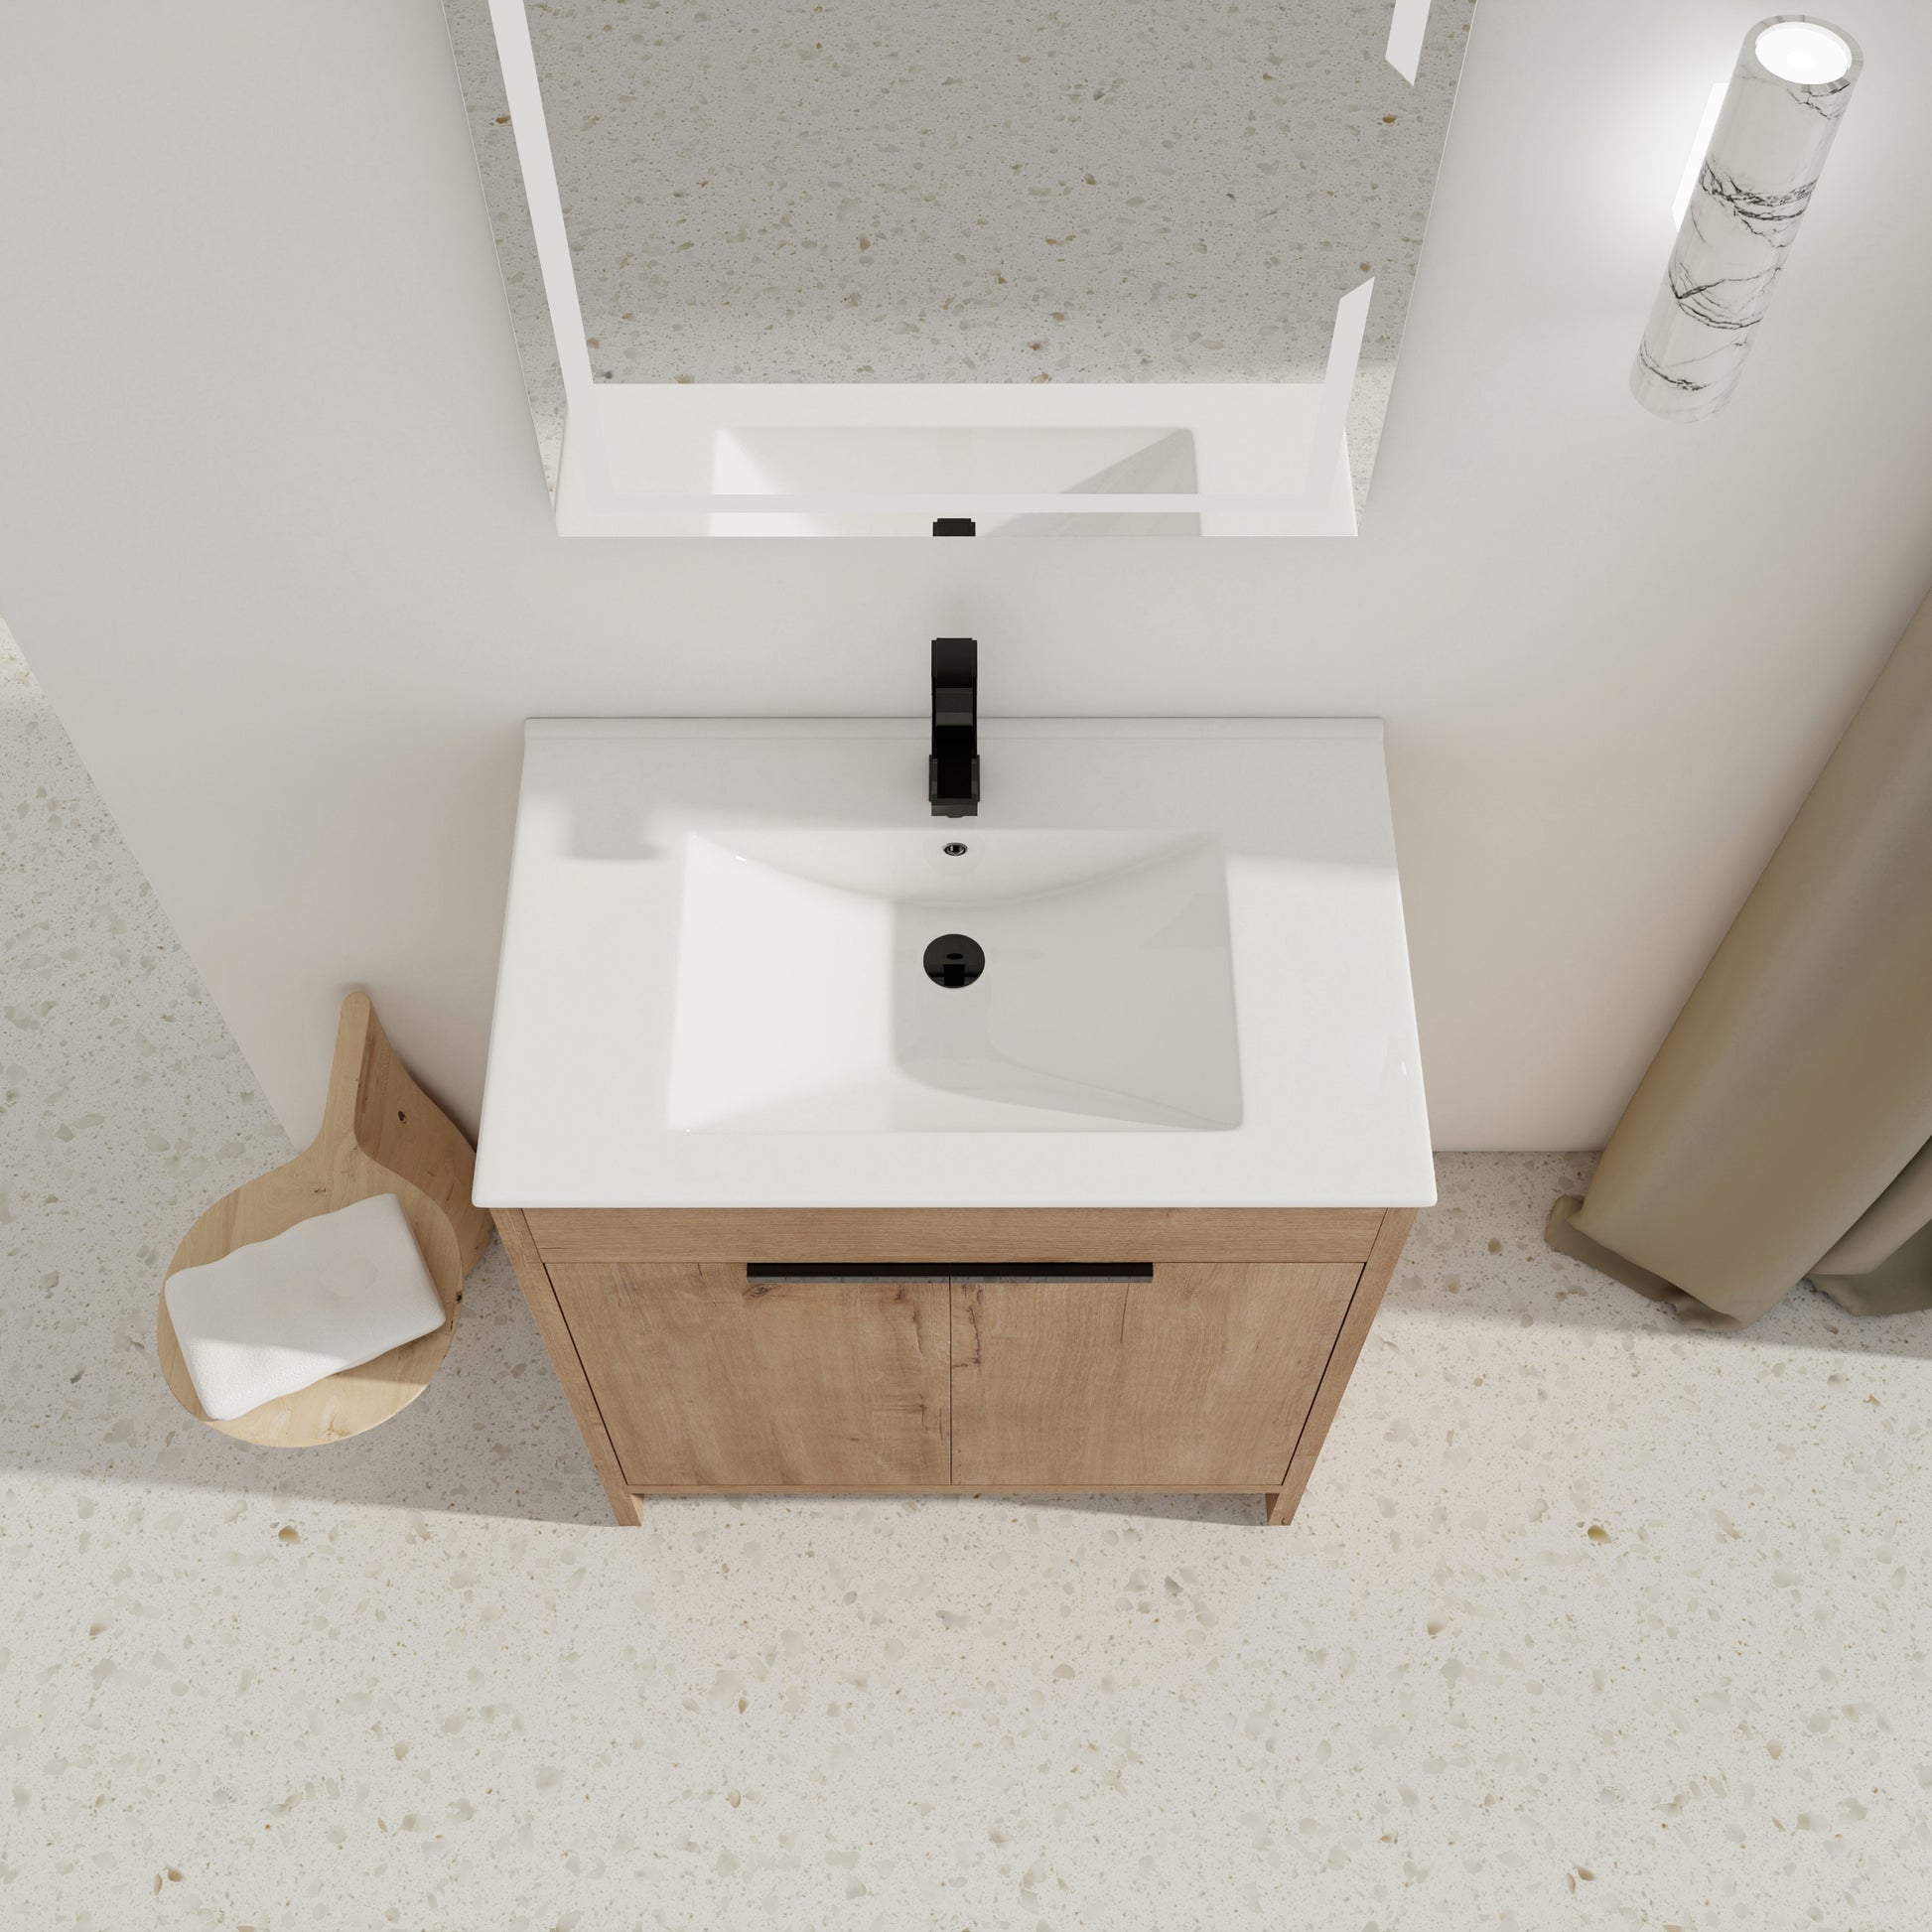 30" Freestanding Bathroom Vanity with White Ceramic imitative